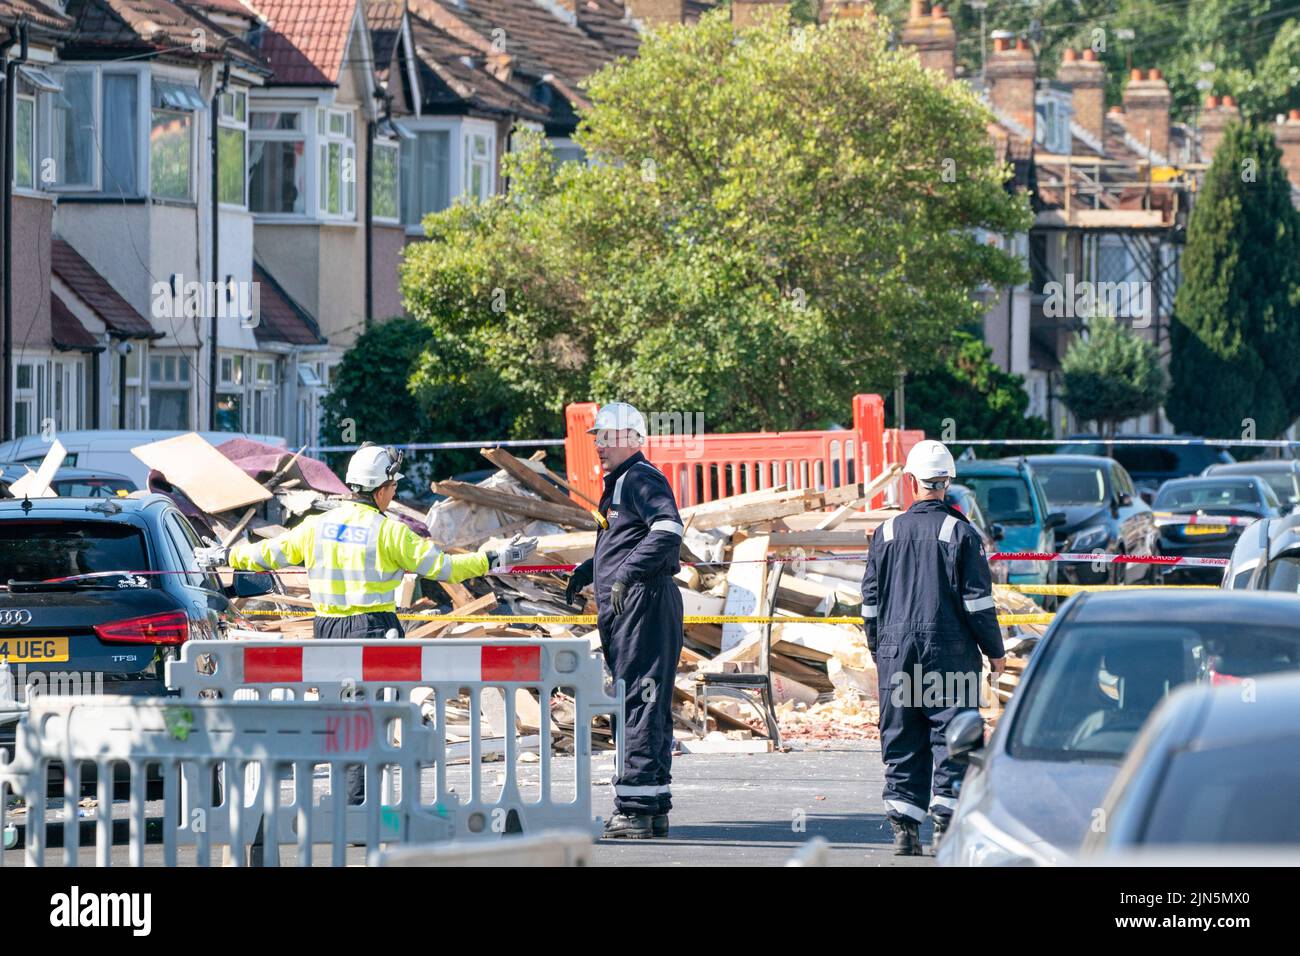 Ingenieure am Ort einer Explosion an der Galpin's Road in Thornton Heath, Süd-London. Der Londoner Krankenwagen hat bestätigt, dass ein Kind gestorben ist und drei Personen im Krankenhaus sind, nachdem das Reihenhaus am Montag nach einer Explosion und einem Brand zusammengebrochen war. Bilddatum: Dienstag, 9. August 2022. Stockfoto